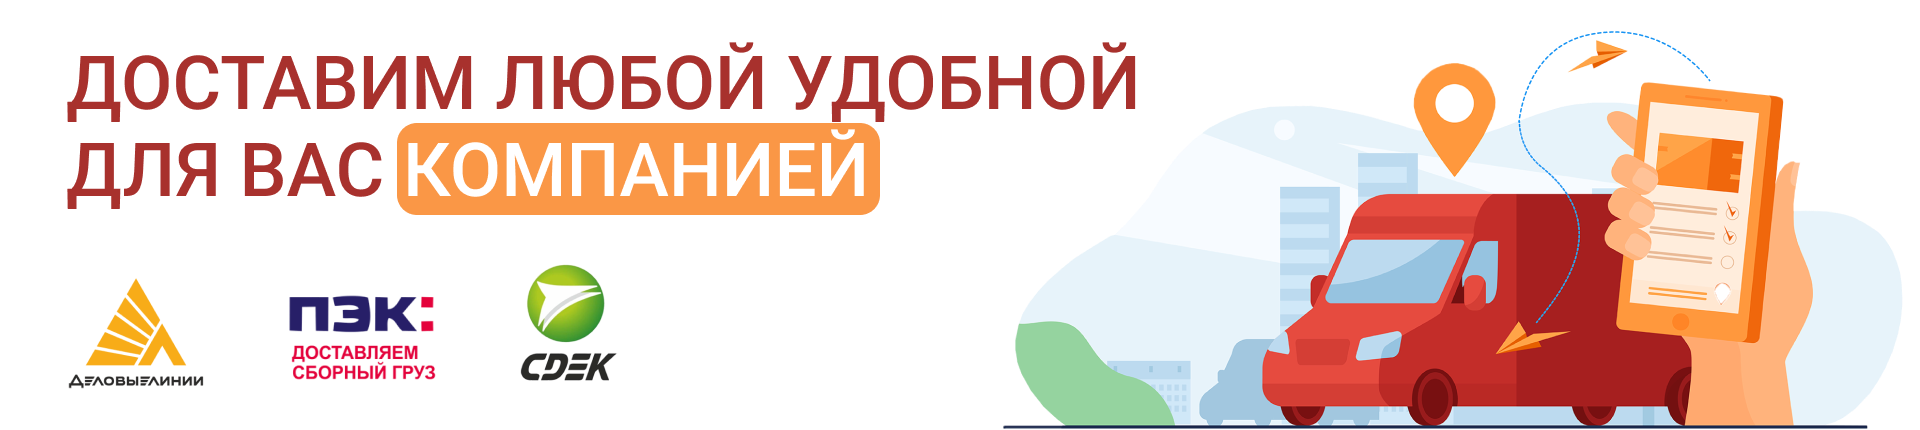 Курьерская доставка осуществляется по Москве и Московской области